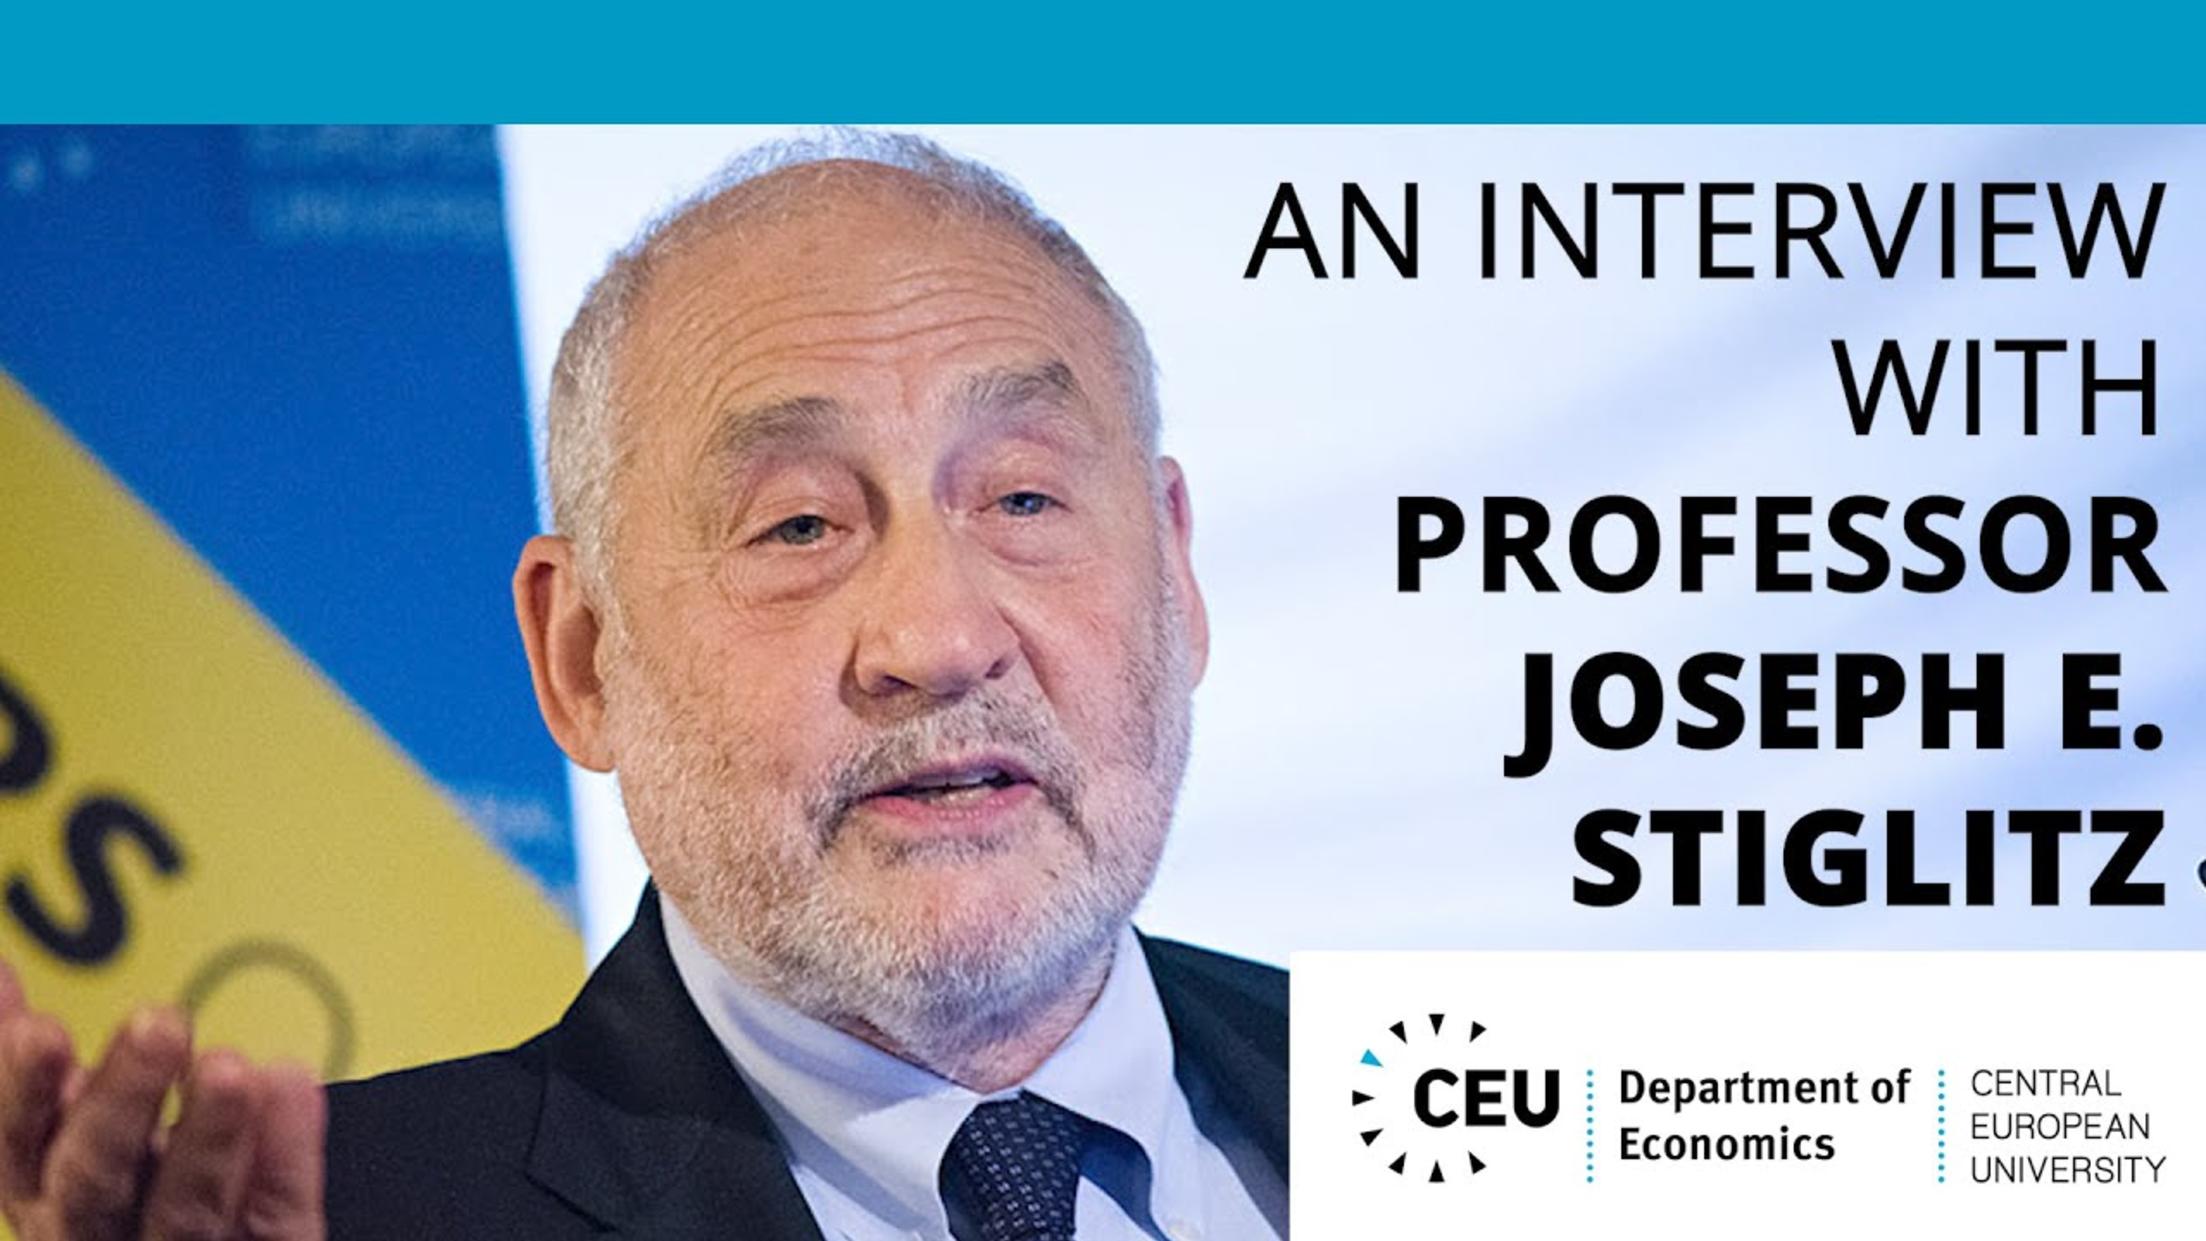 An Interview with Professor Joseph E. Stiglitz